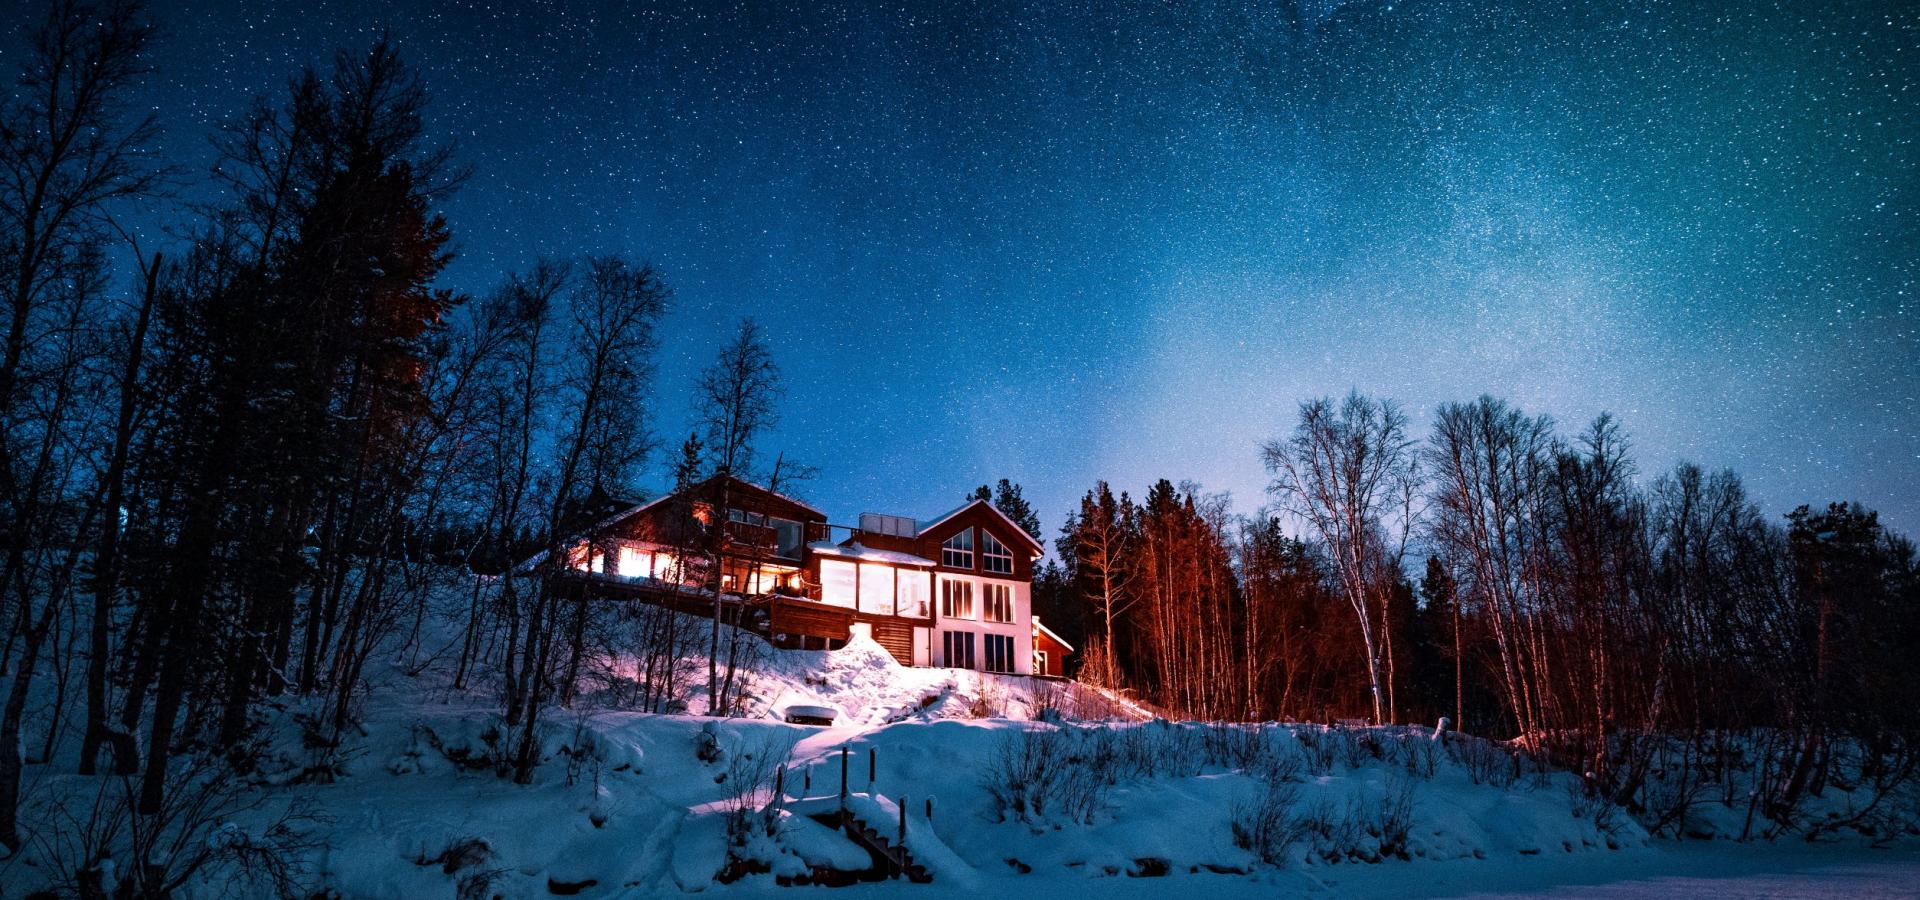 Reisastua Lodge under en stjerneklar himmel og litt nordlys